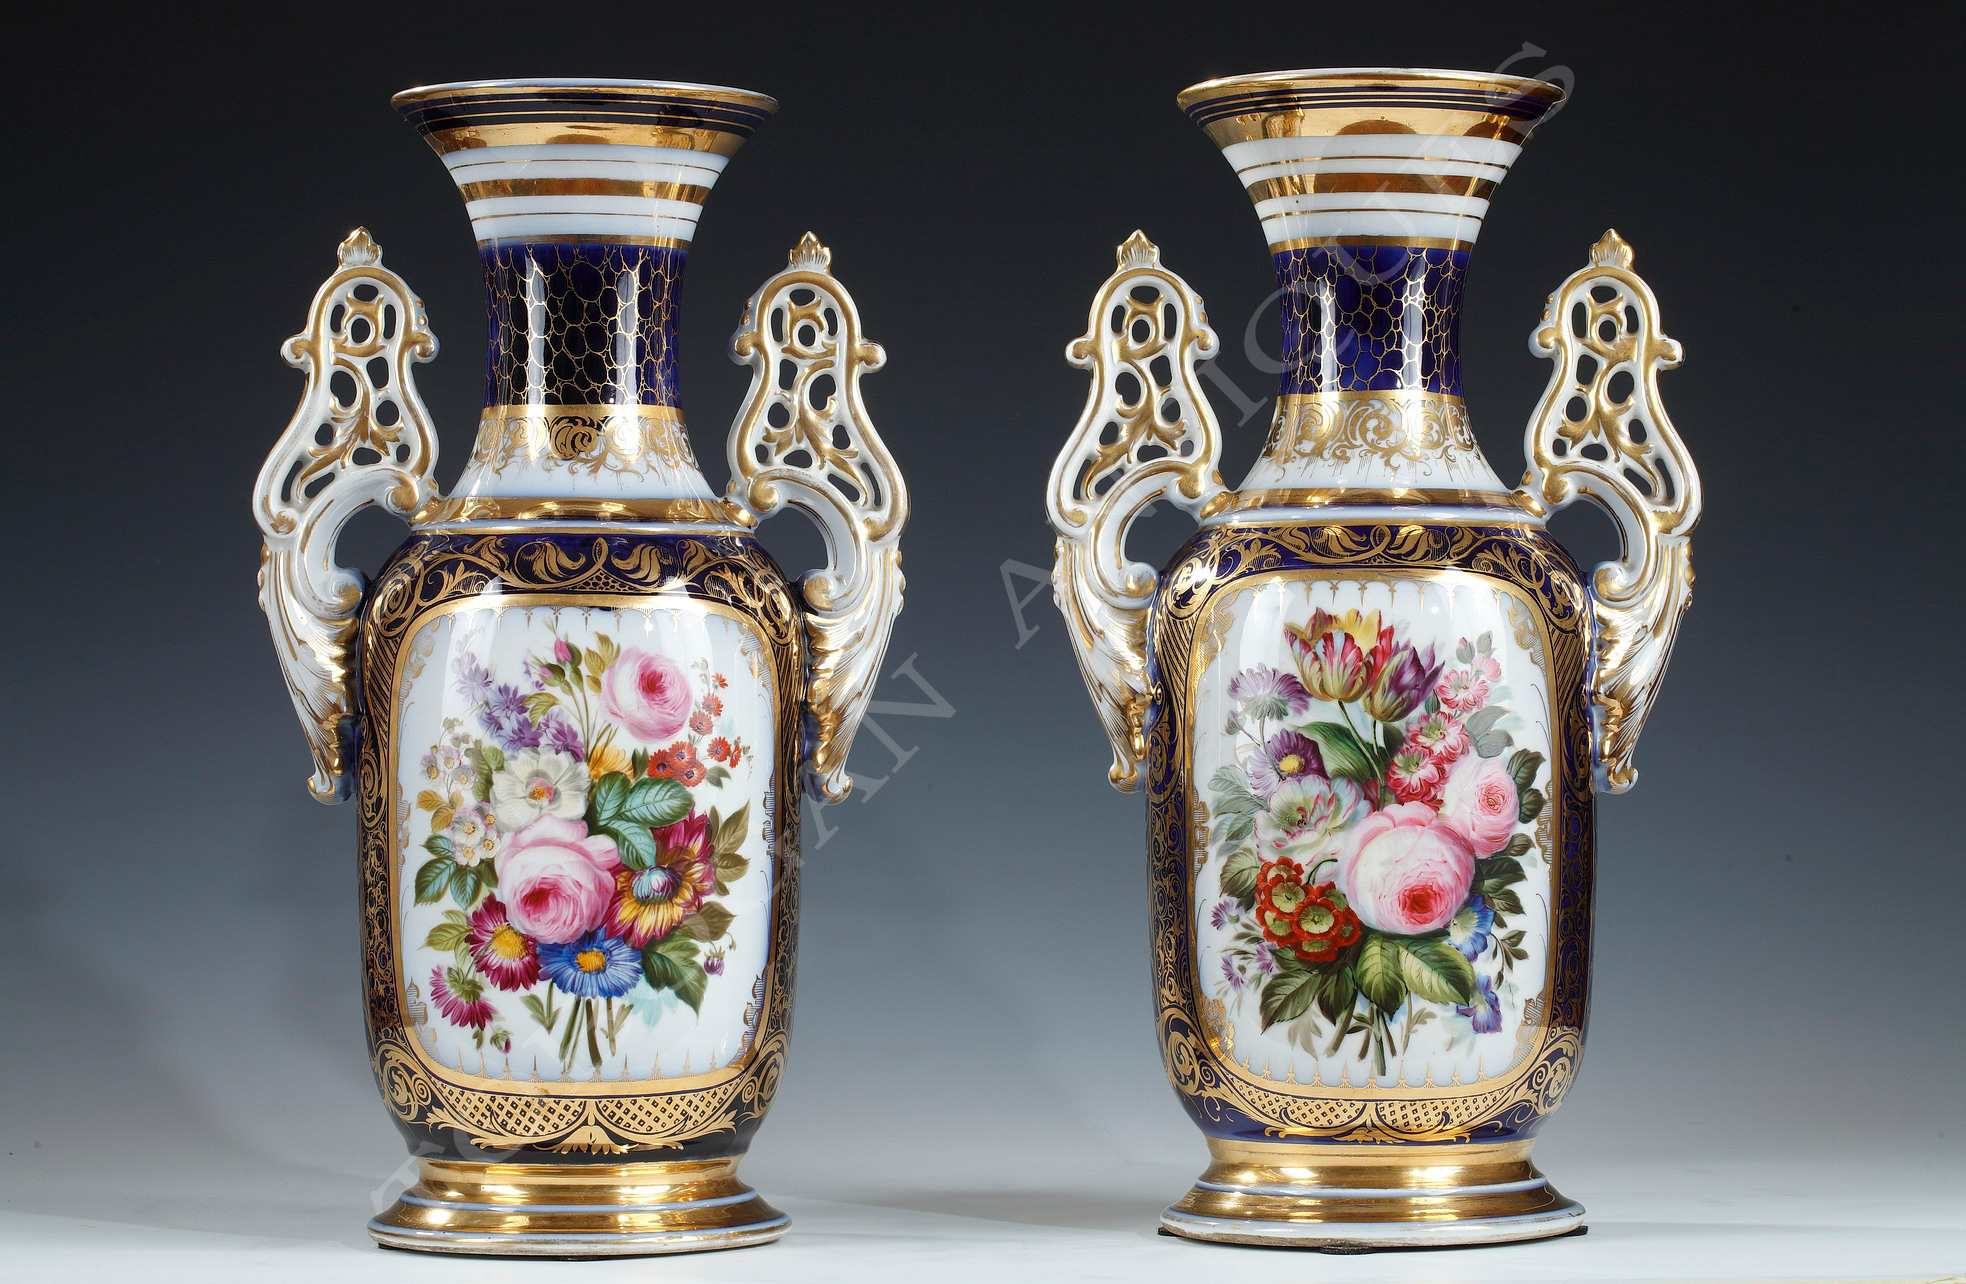 Manufacture of Valentine <br/> Elegant pair of vases